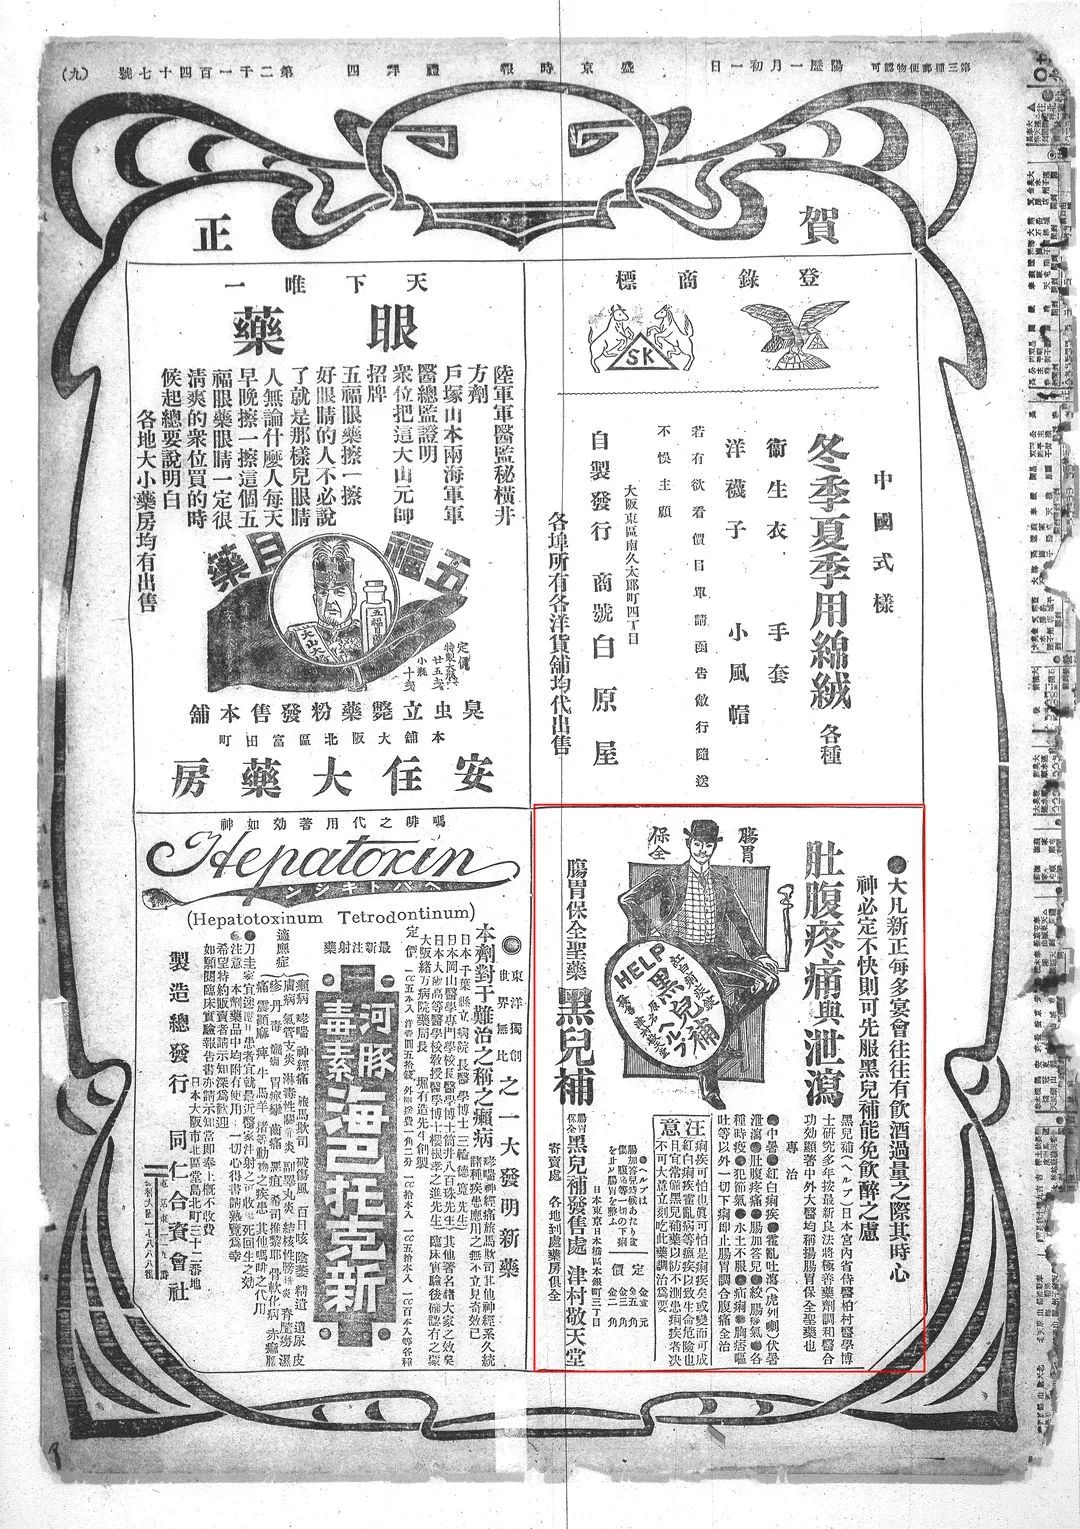 《盛京时报》 |  外国商品广告数据一览